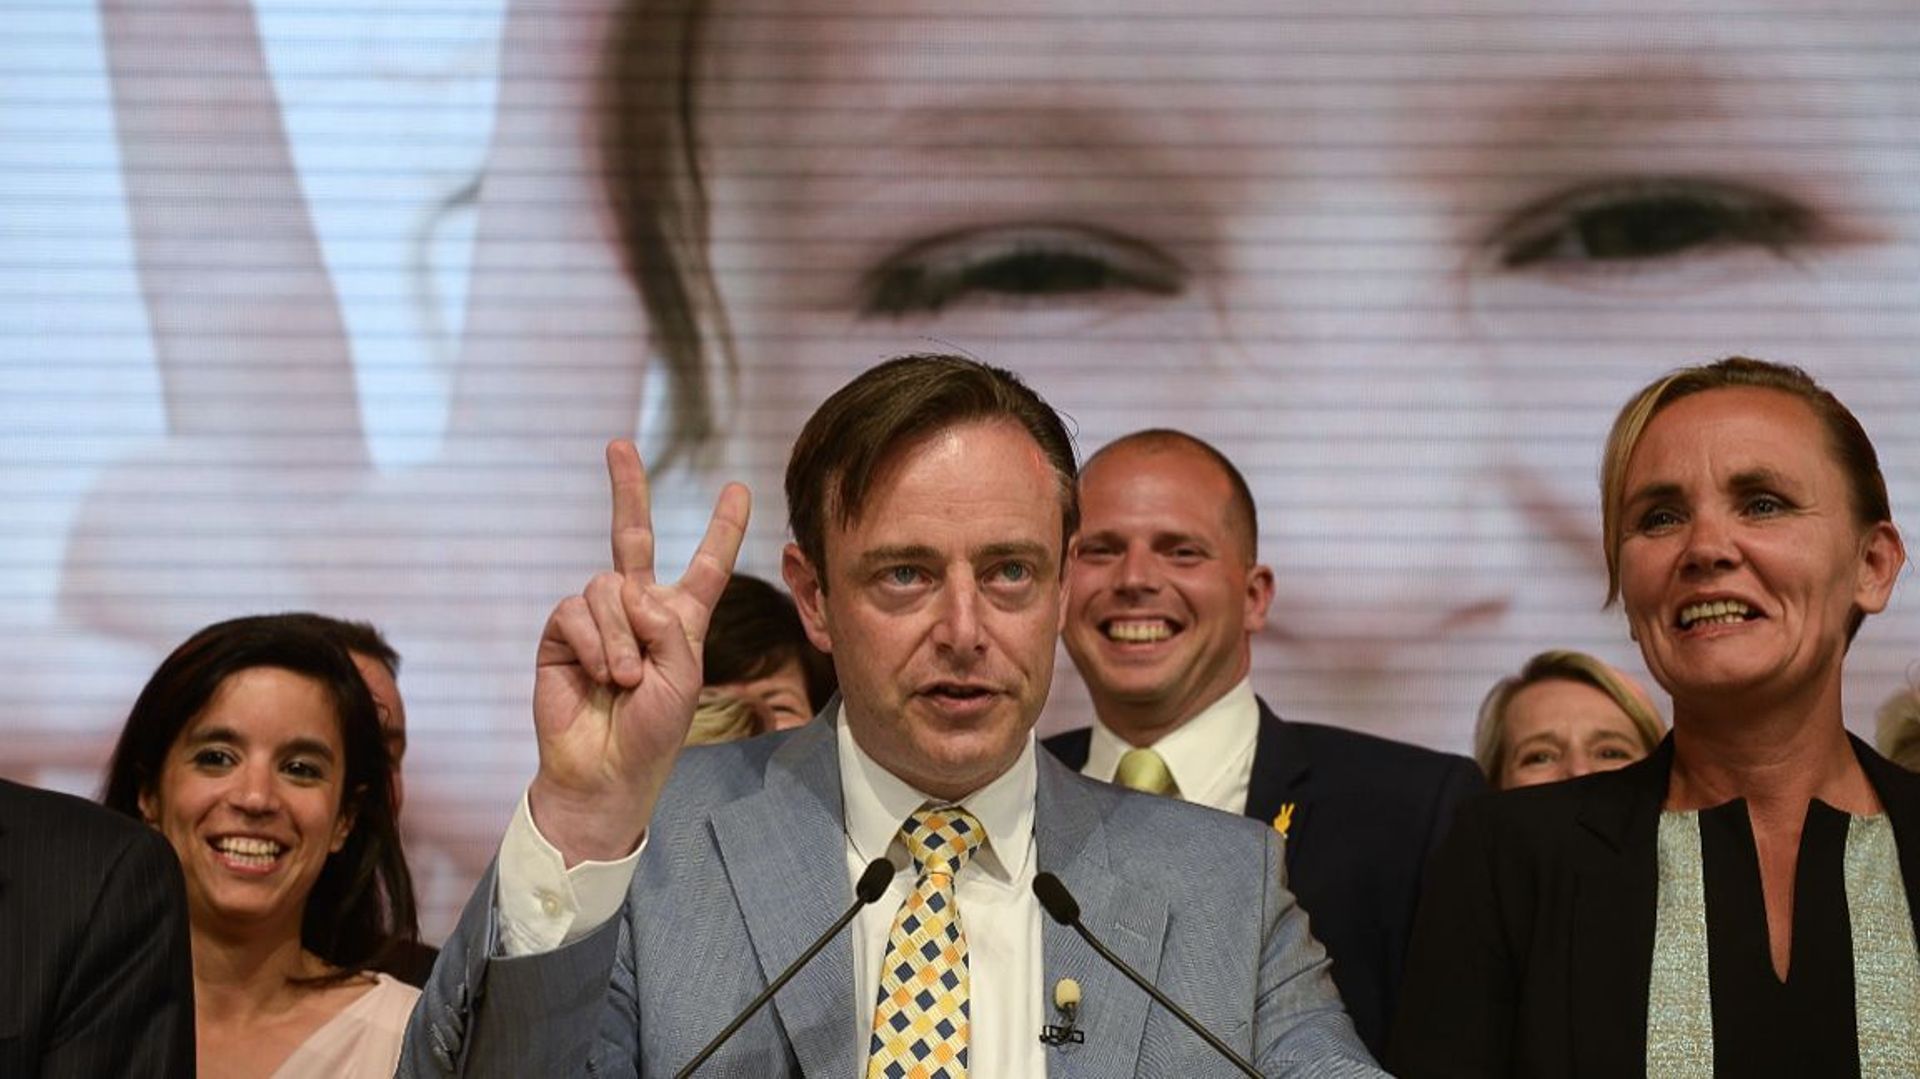 Victoire incontestable de la N-VA: "Fossé entre francophones et Flamands", dit De Wever